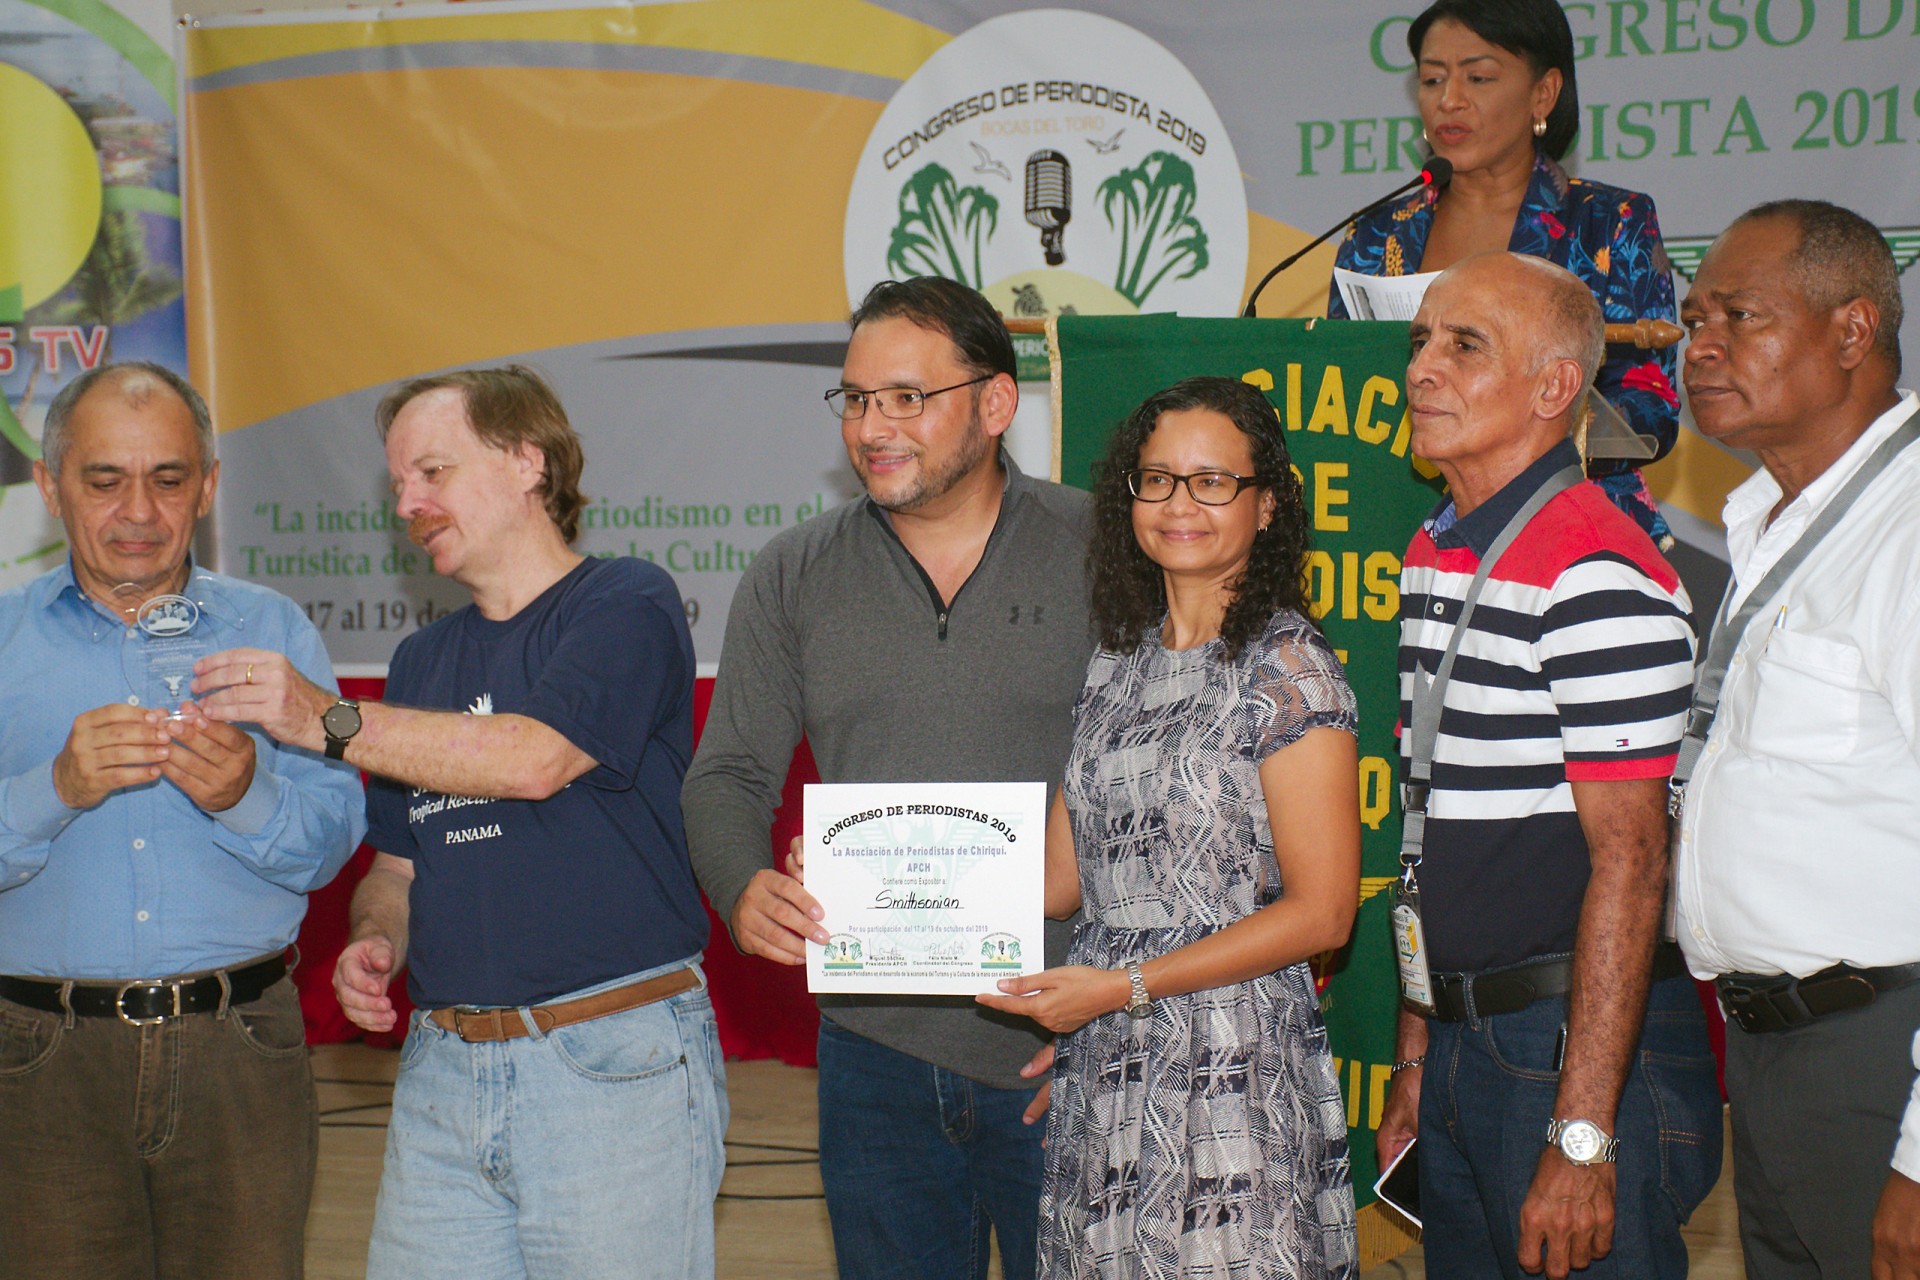 Journalists’ Congress in Bocas del Toro